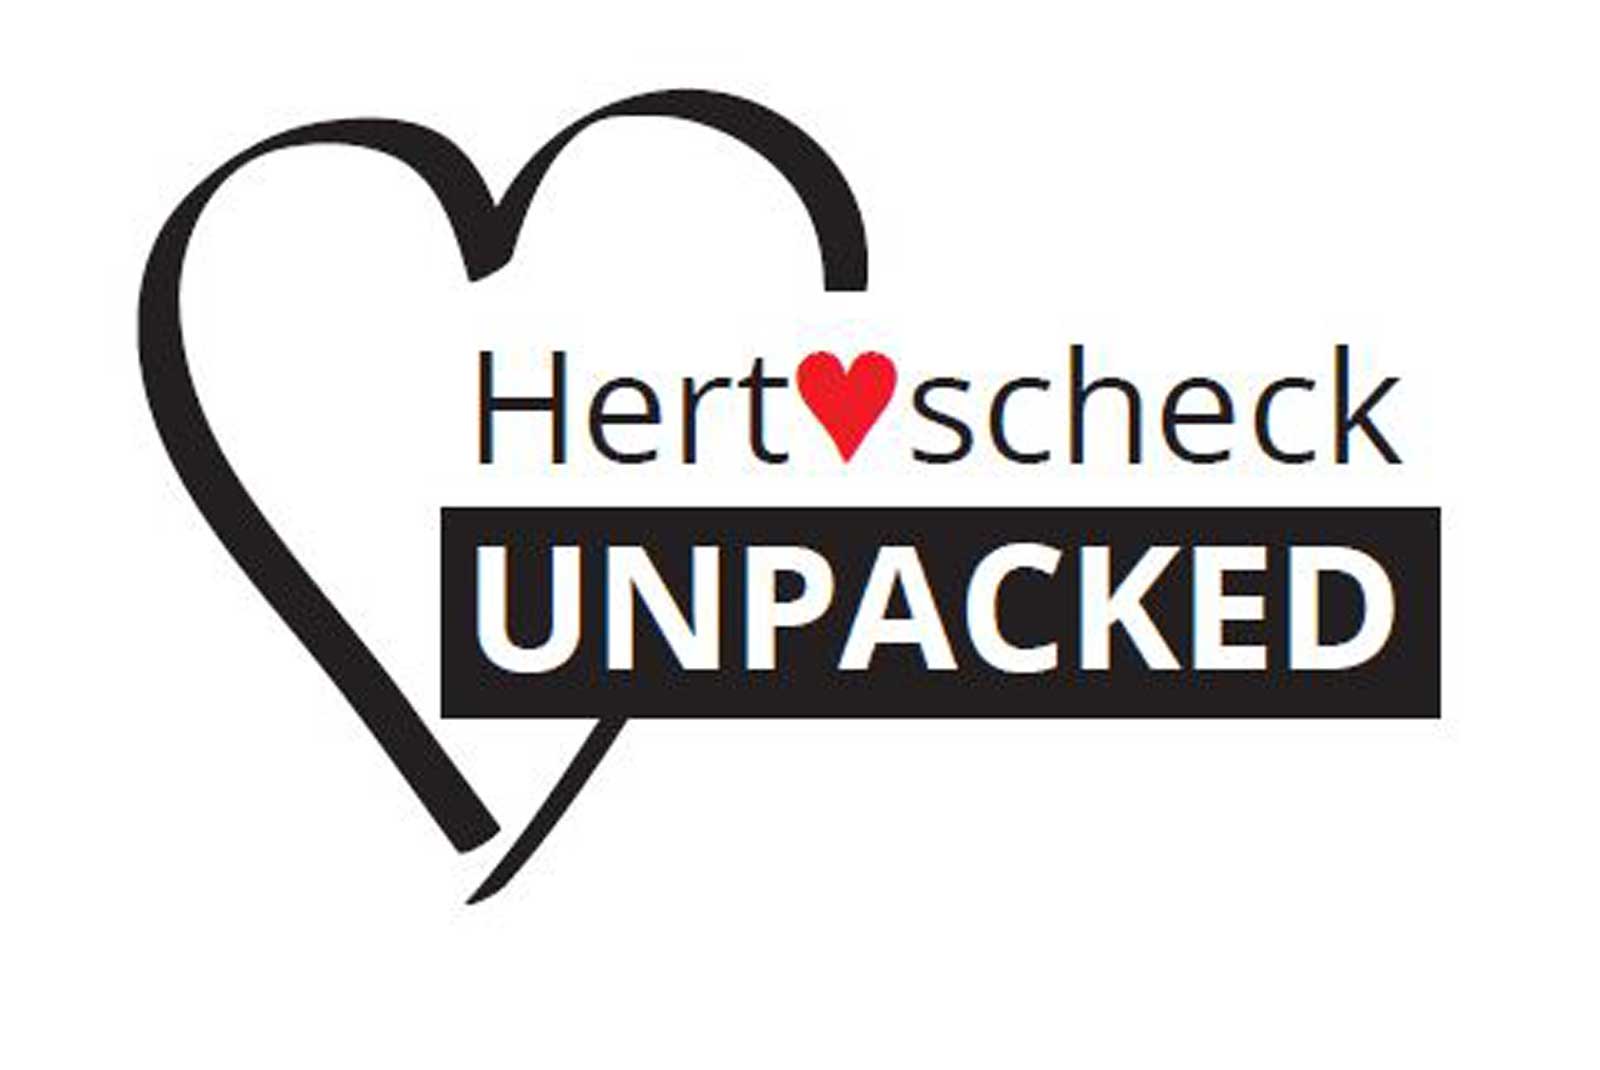 Hertscheck unpacked